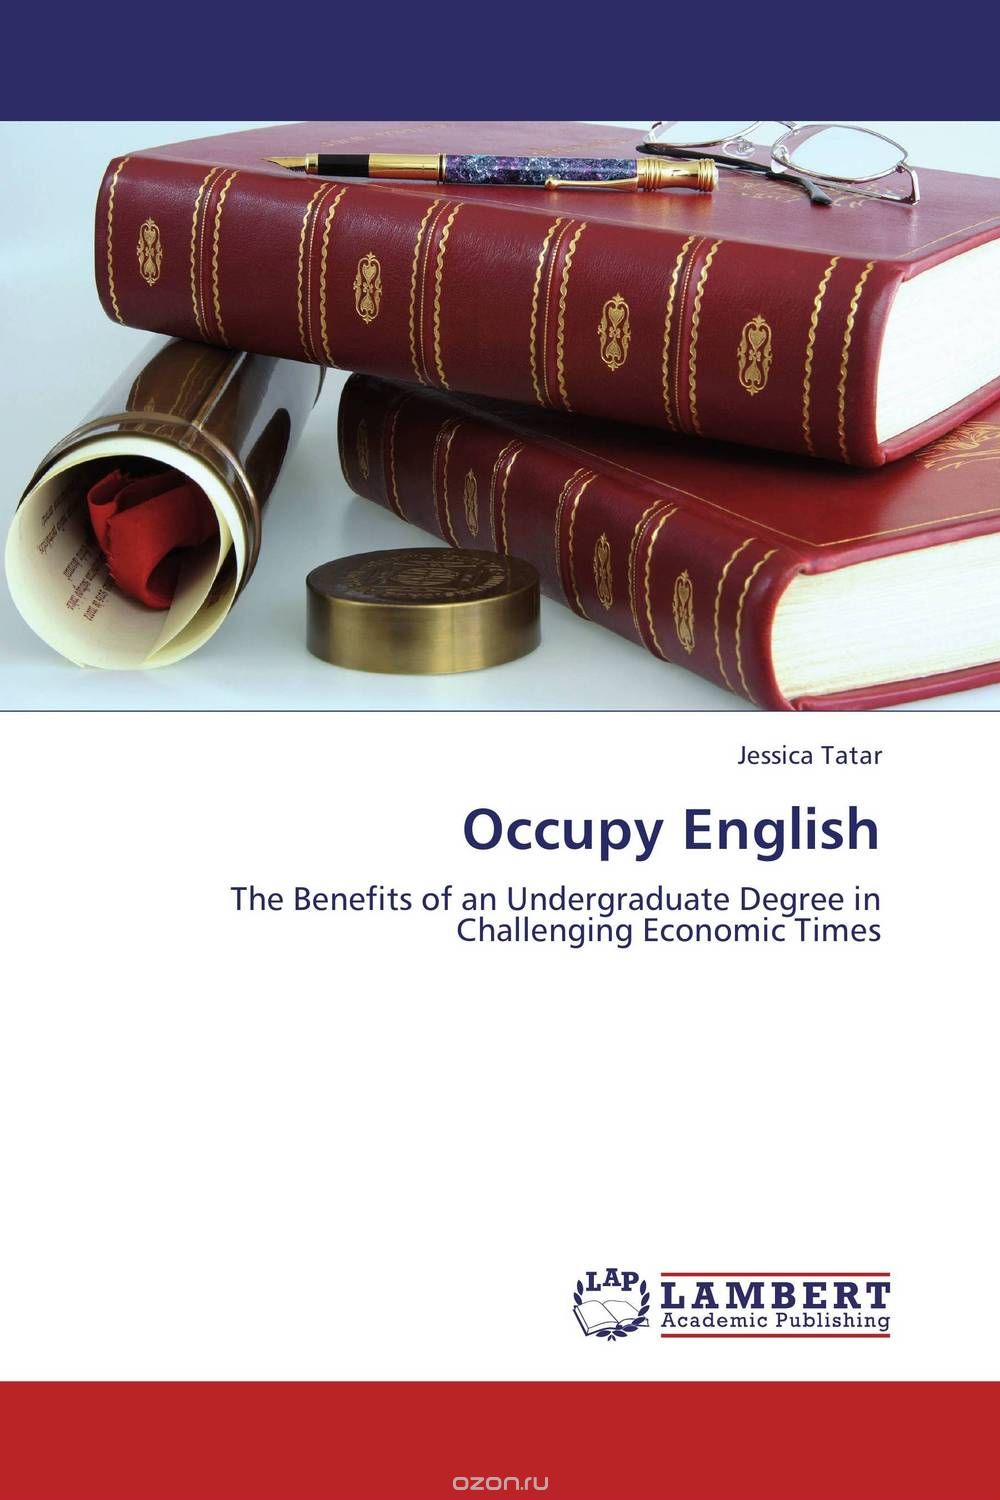 Скачать книгу "Occupy English"